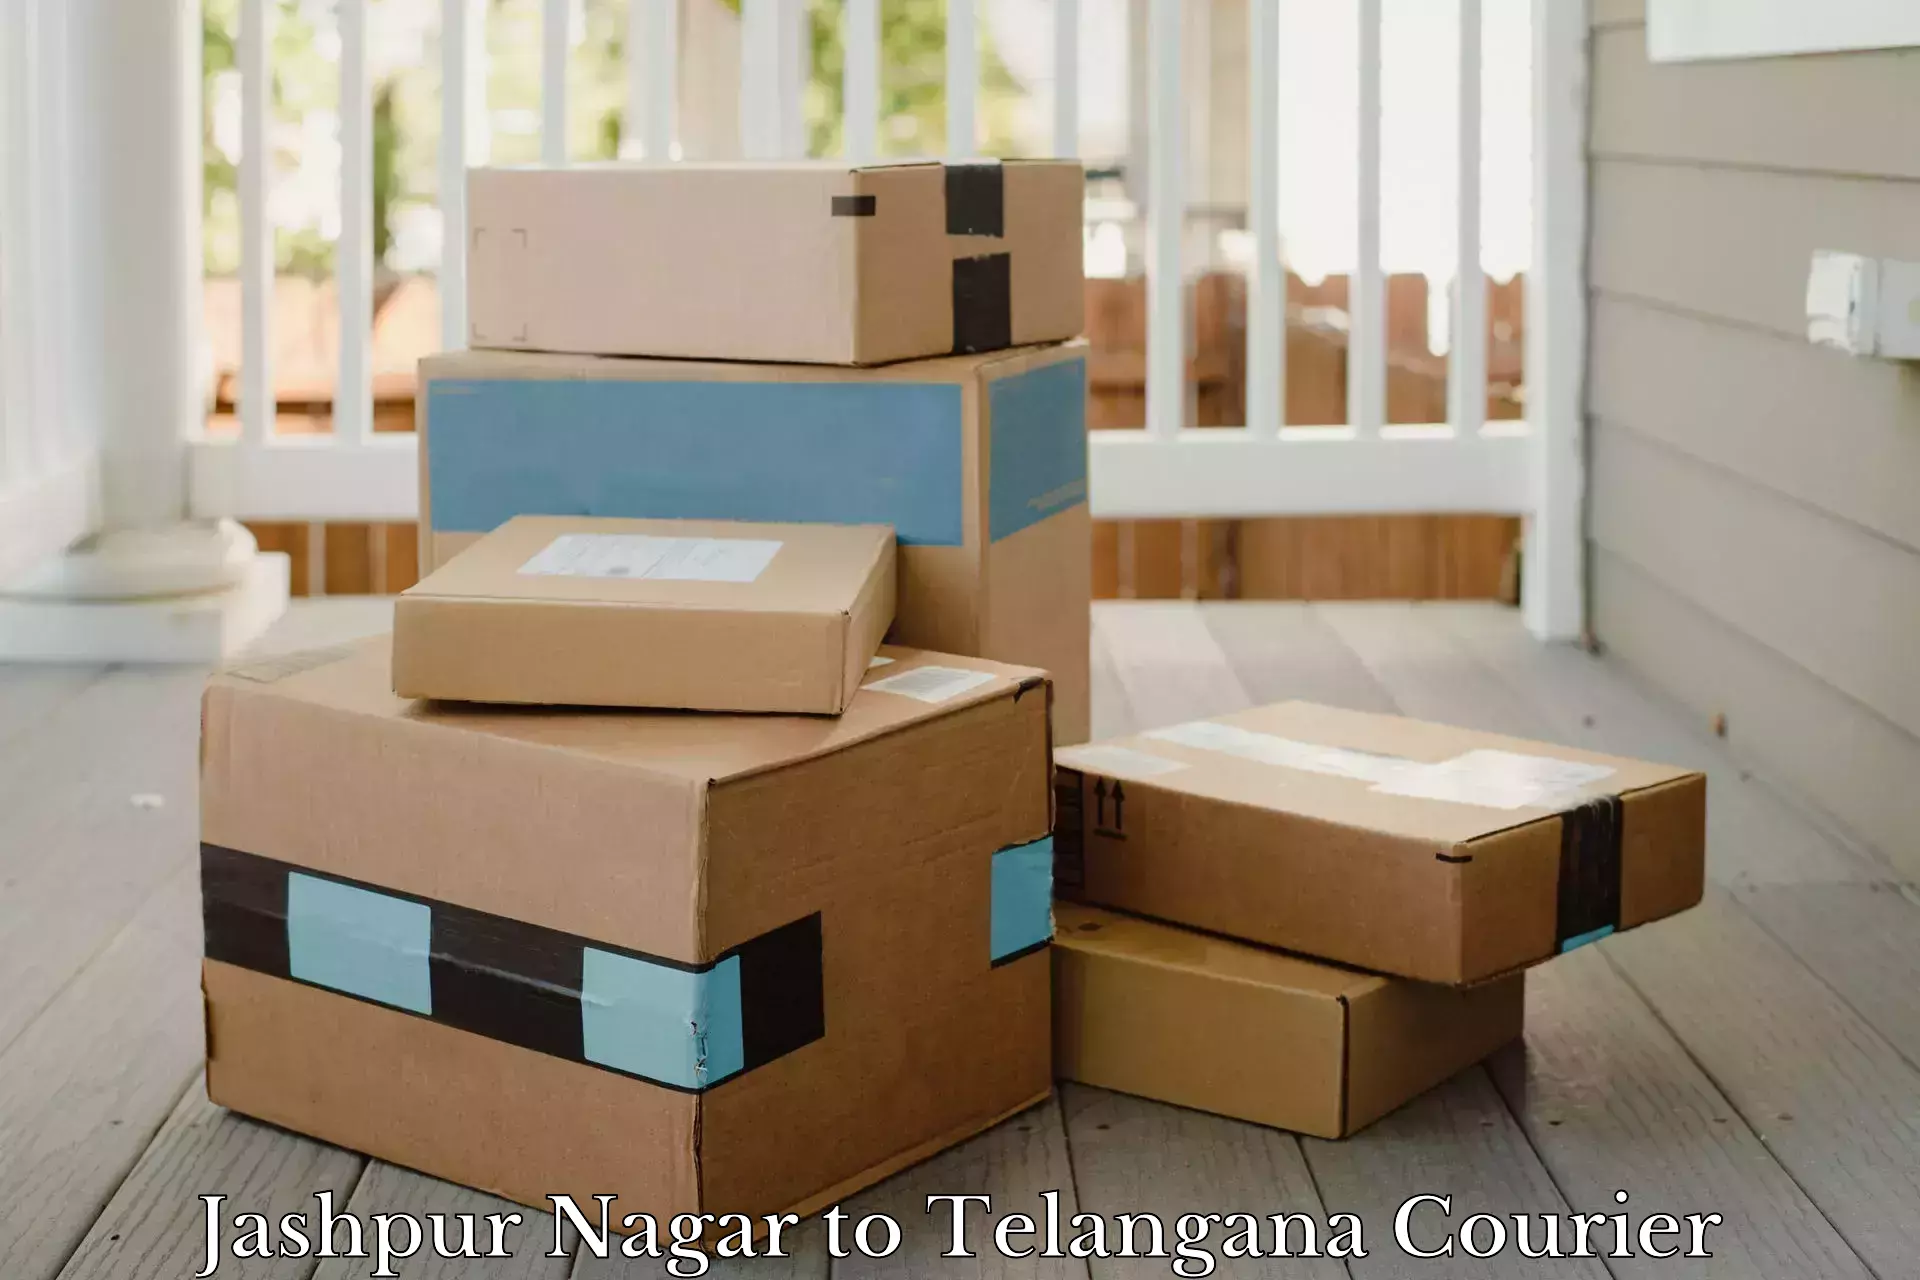 Comprehensive delivery network Jashpur Nagar to Patancheru